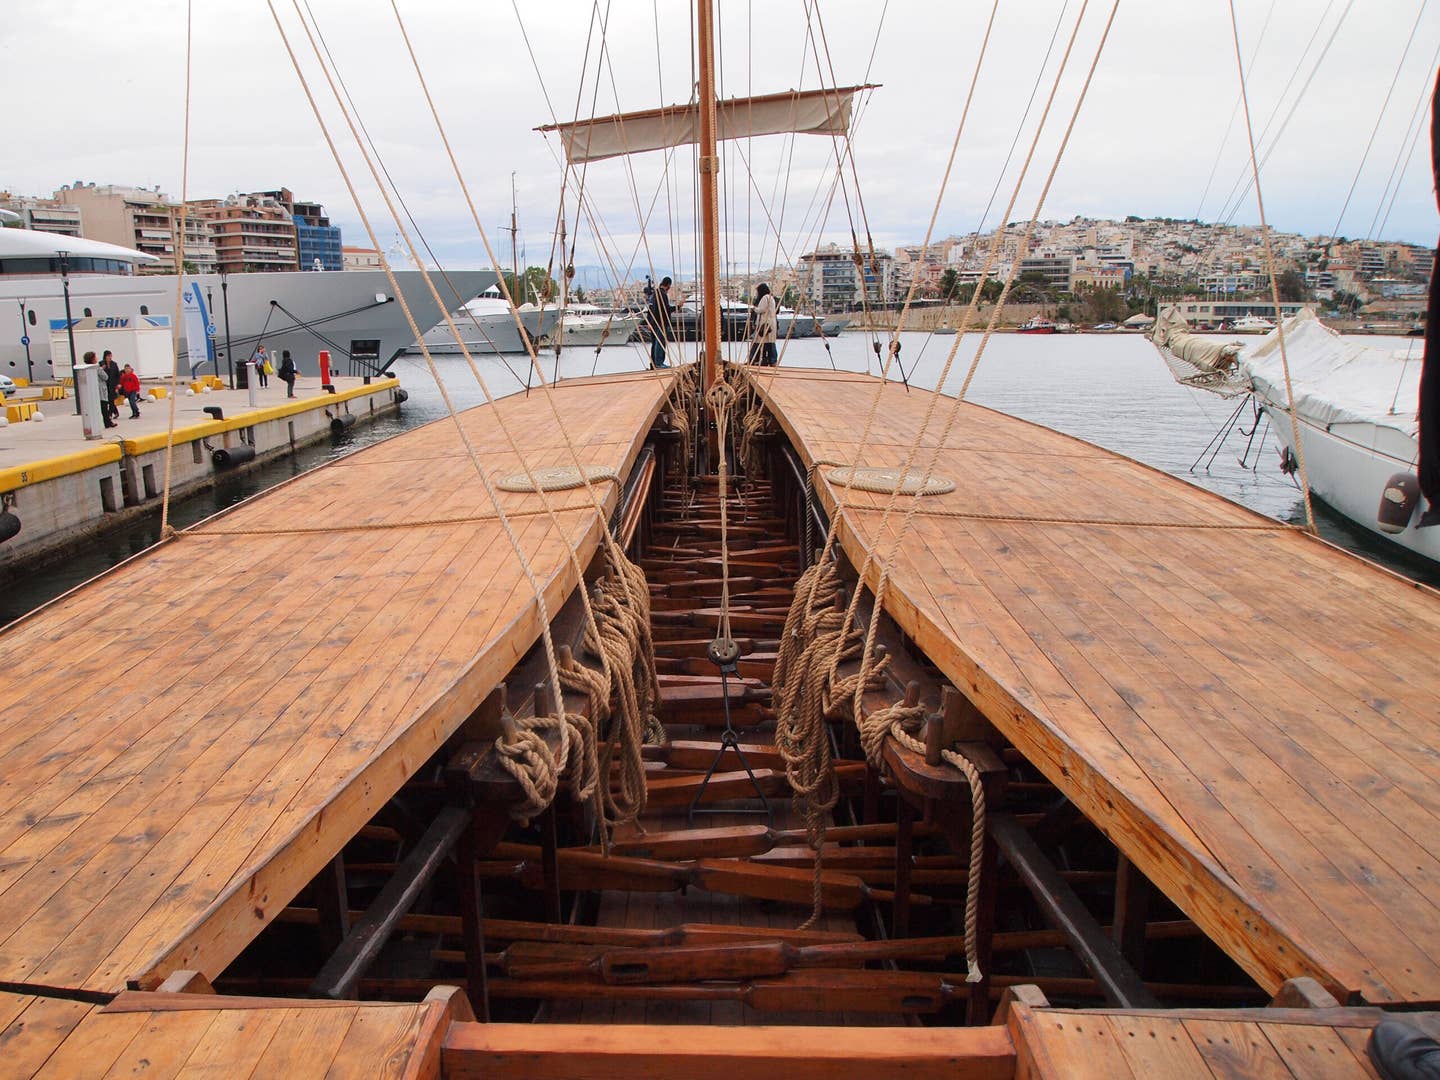 Below the deck of <em>Olympia</em> At Marina Zeas, Piraeus, Greece, May 4, 2019. <em>Photo by Grigoris Siamidis/NurPhoto via Getty Images</em>